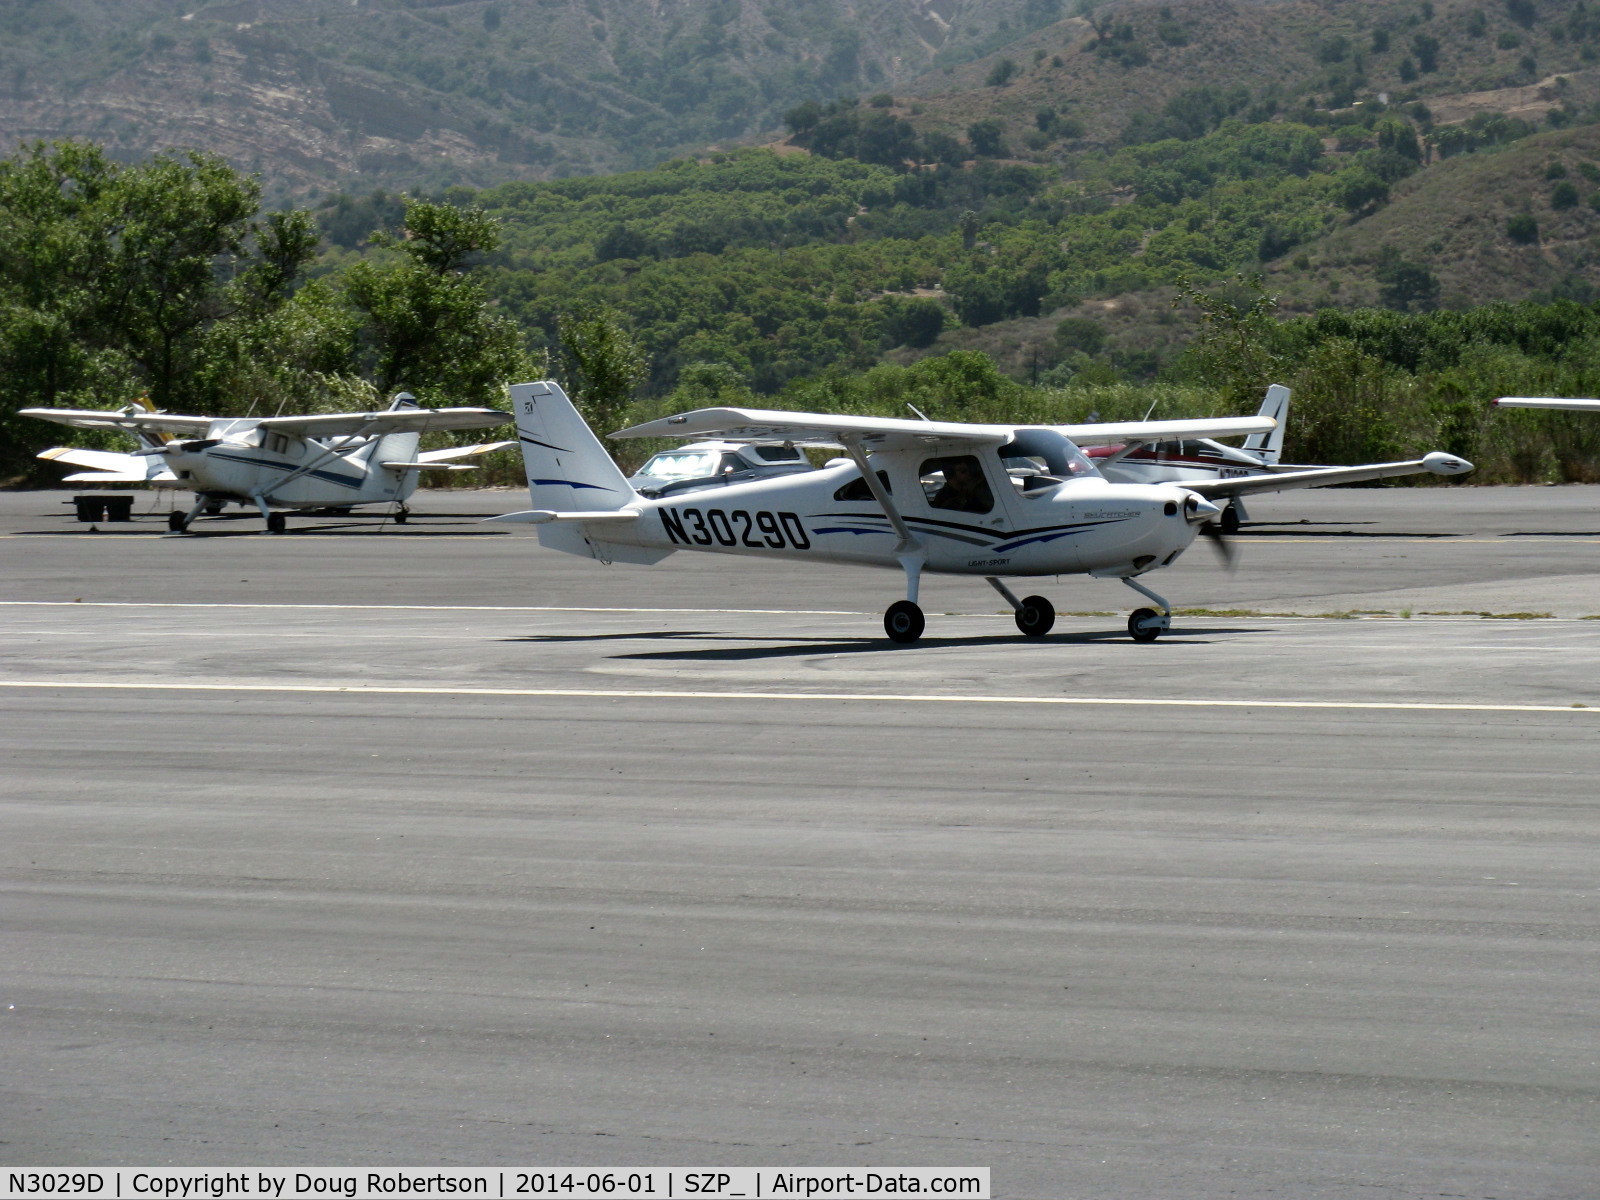 N3029D, 2011 Cessna 162 Skycatcher C/N 16200097, 2011 Cessna 162 SKYCATCHER LSA, Continental O-200D lightweight 100 Hp, takeoff roll Rwy 22